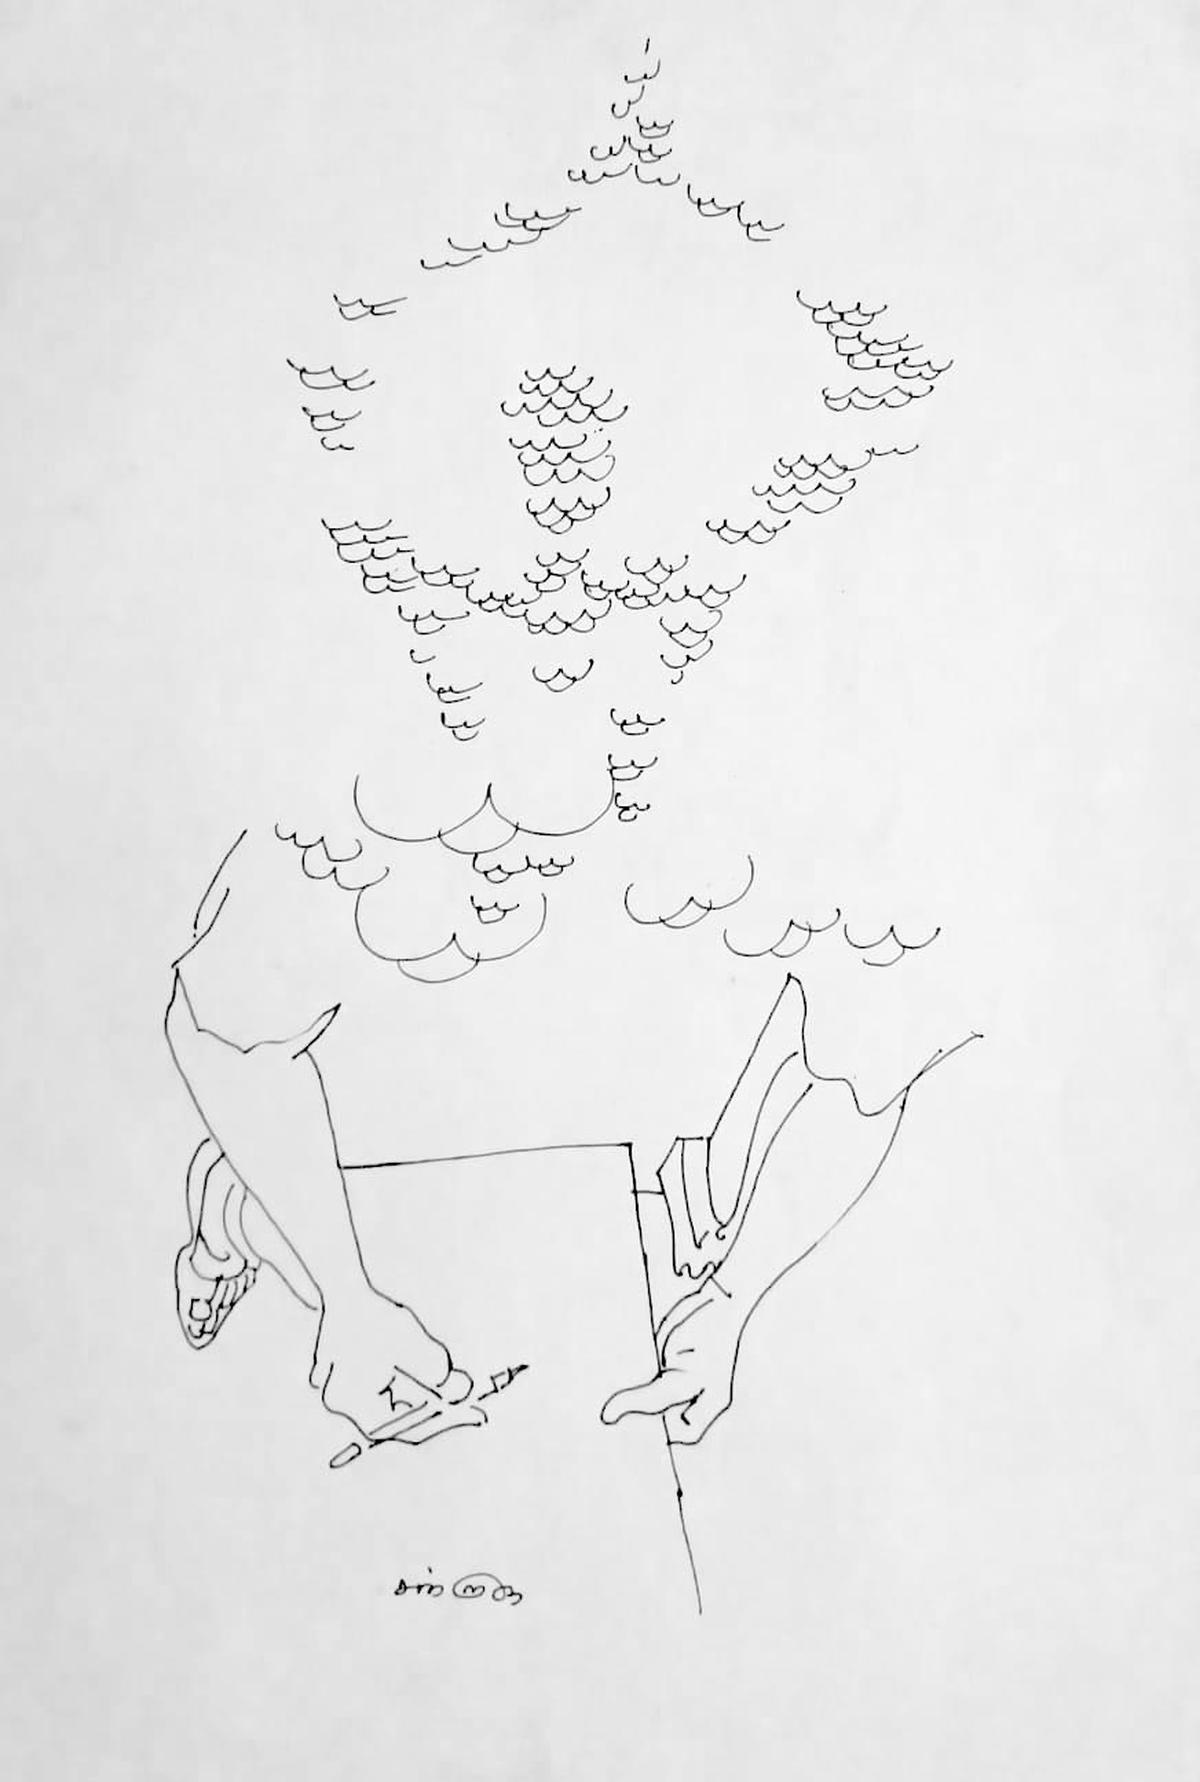 A sketch by Chandrasekar Gurusamy